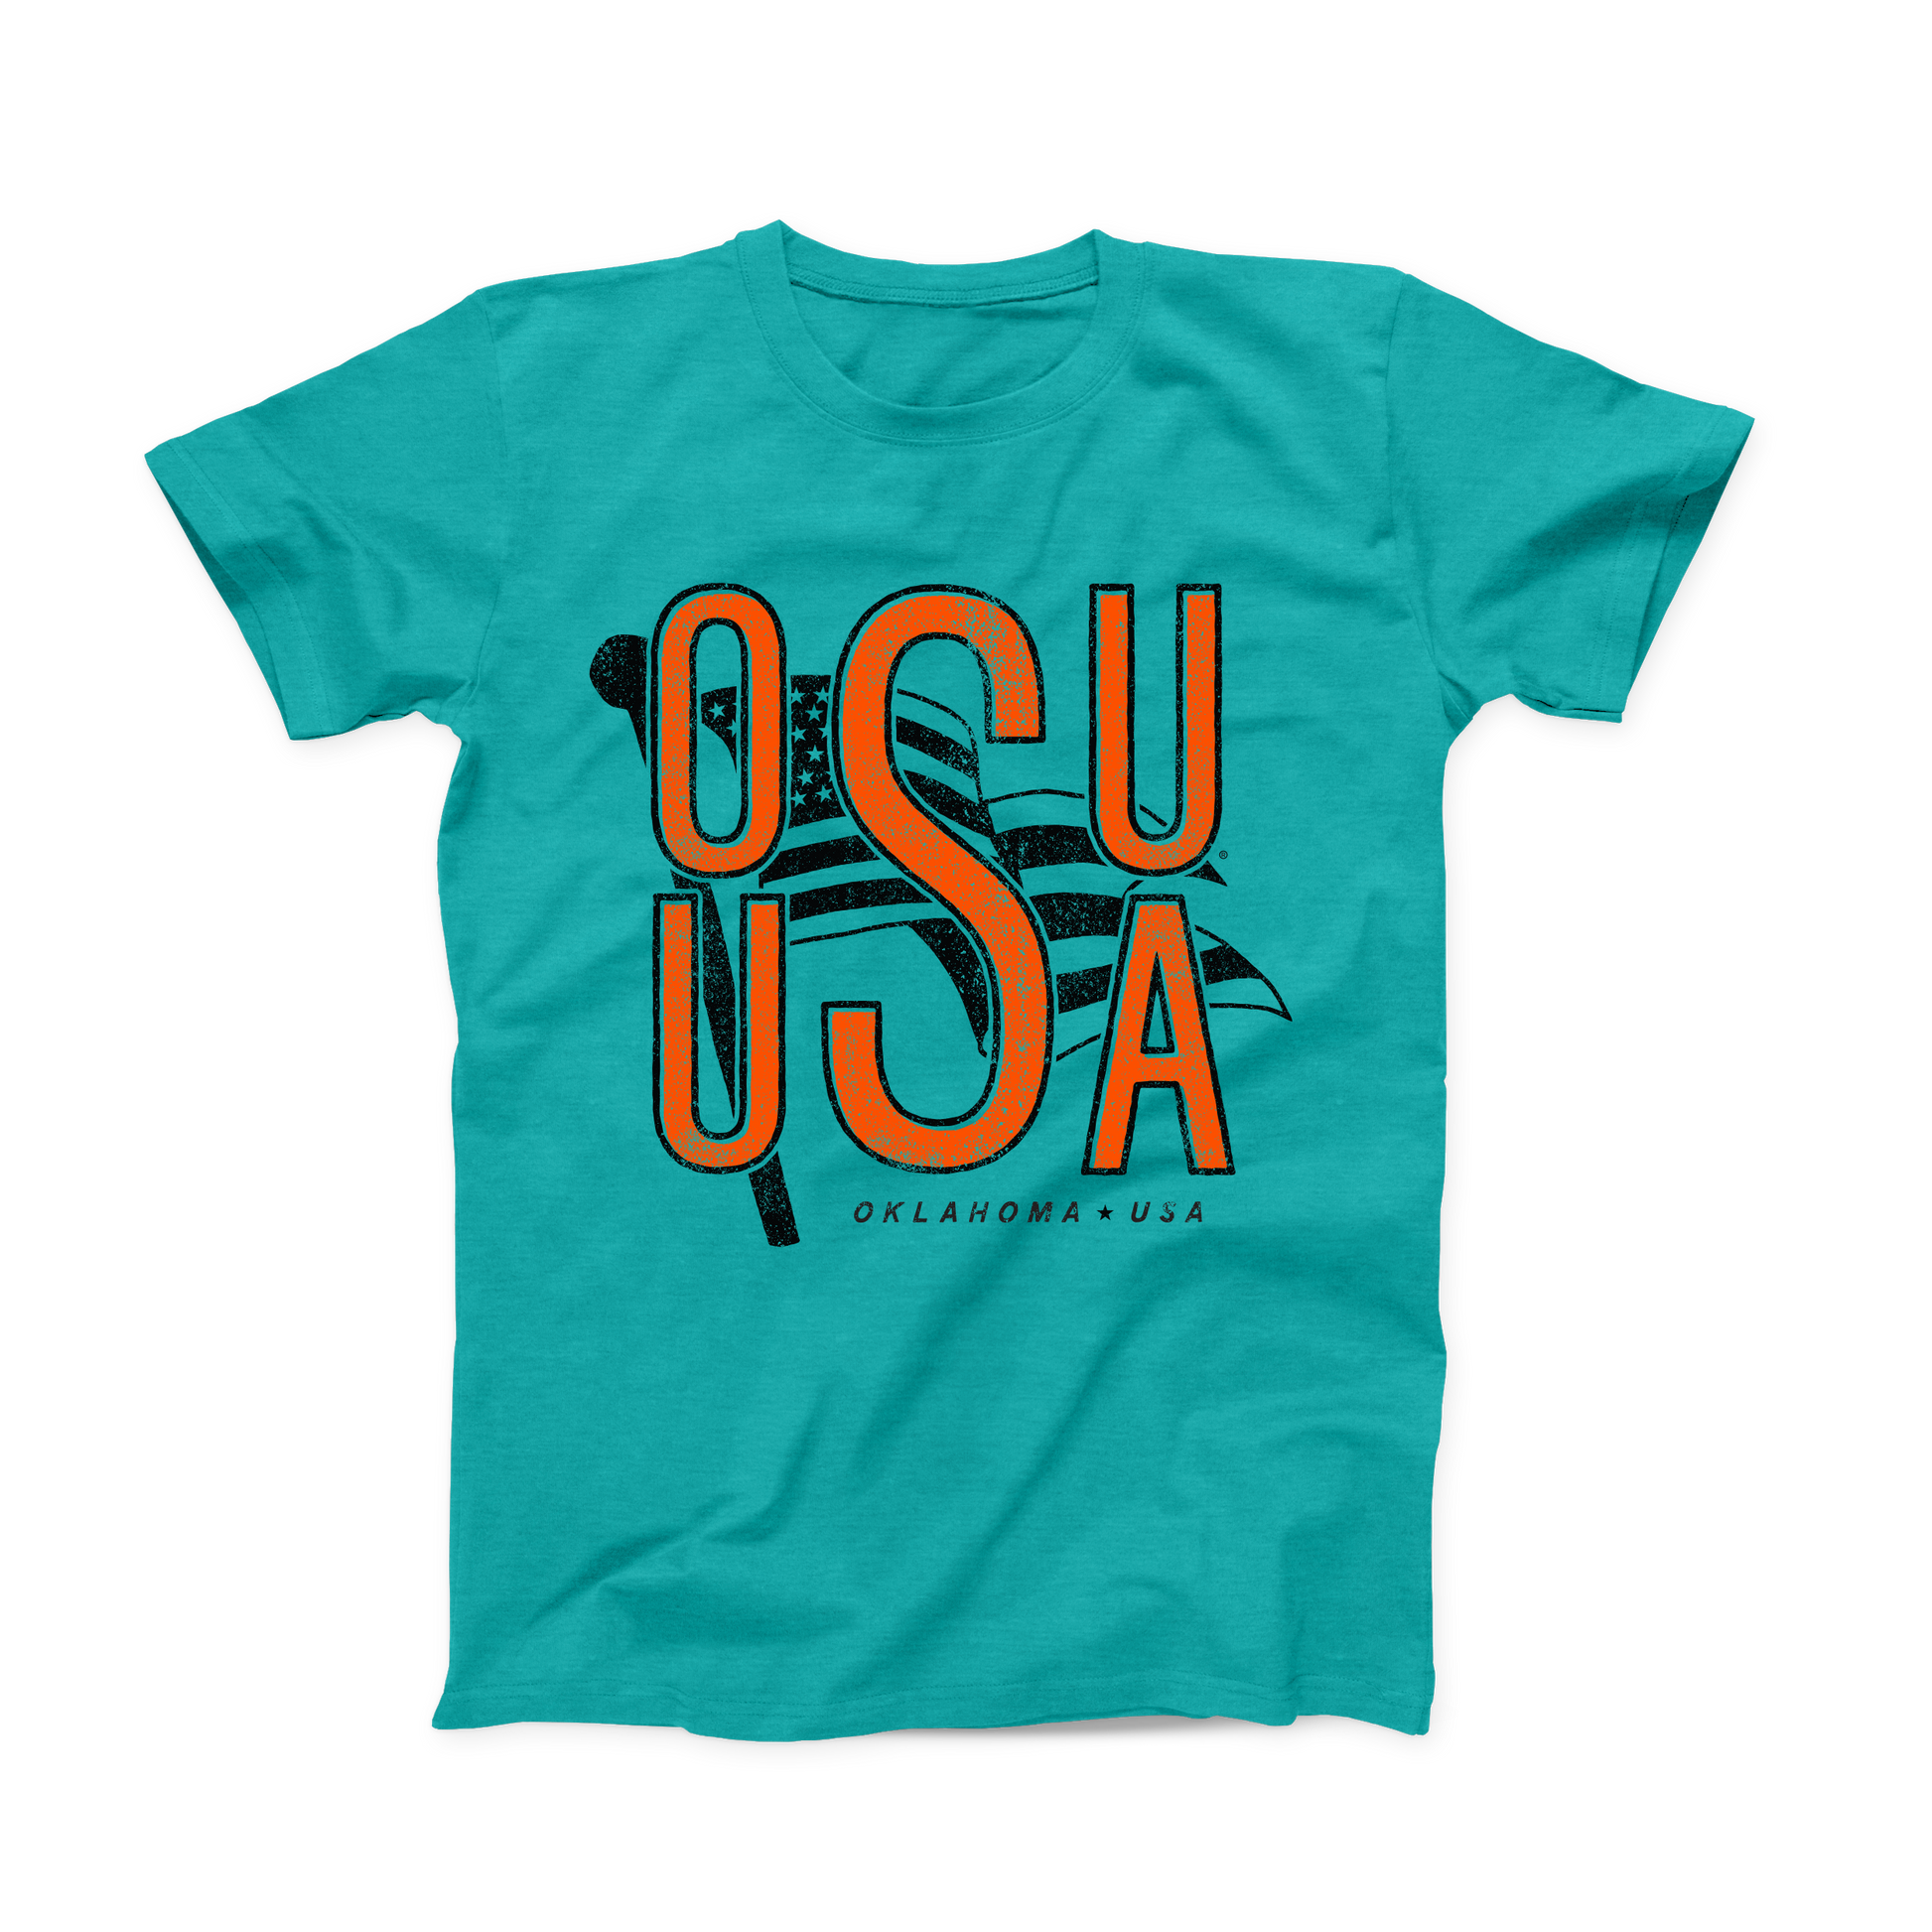 ekko Start champignon OSU - July '21 - OSU USA – Oklahoma Shirt Company